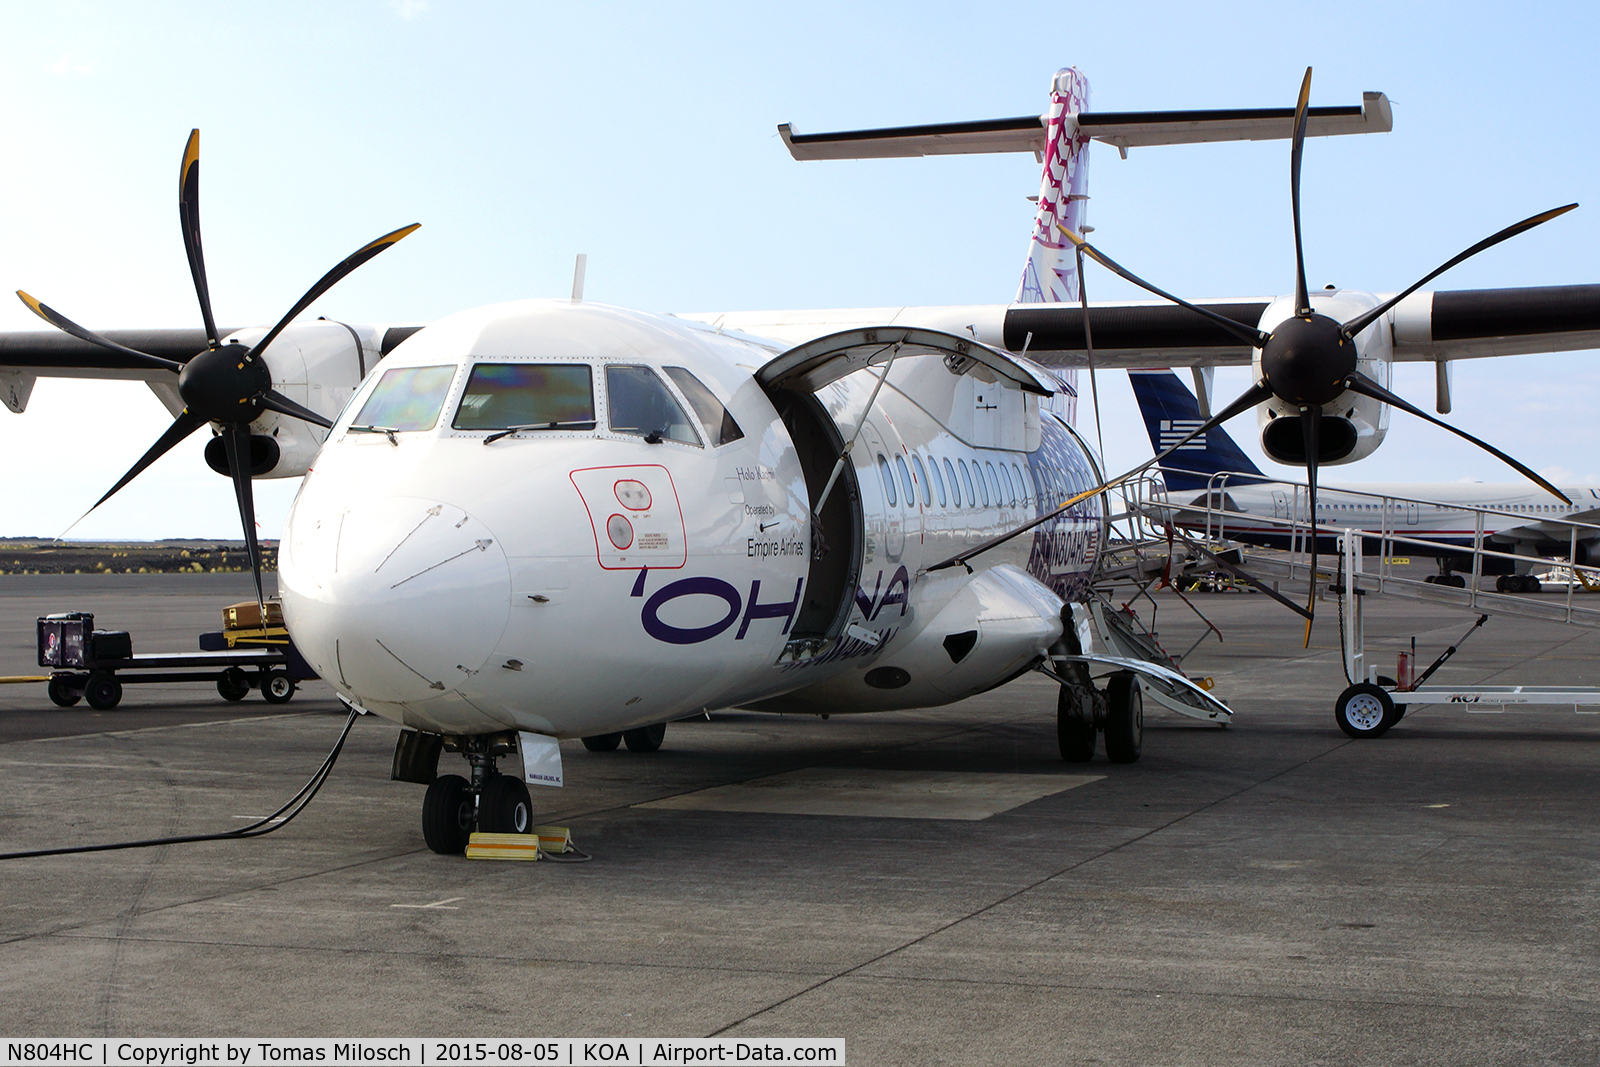 N804HC, 2004 ATR 42-500 C/N 623, 